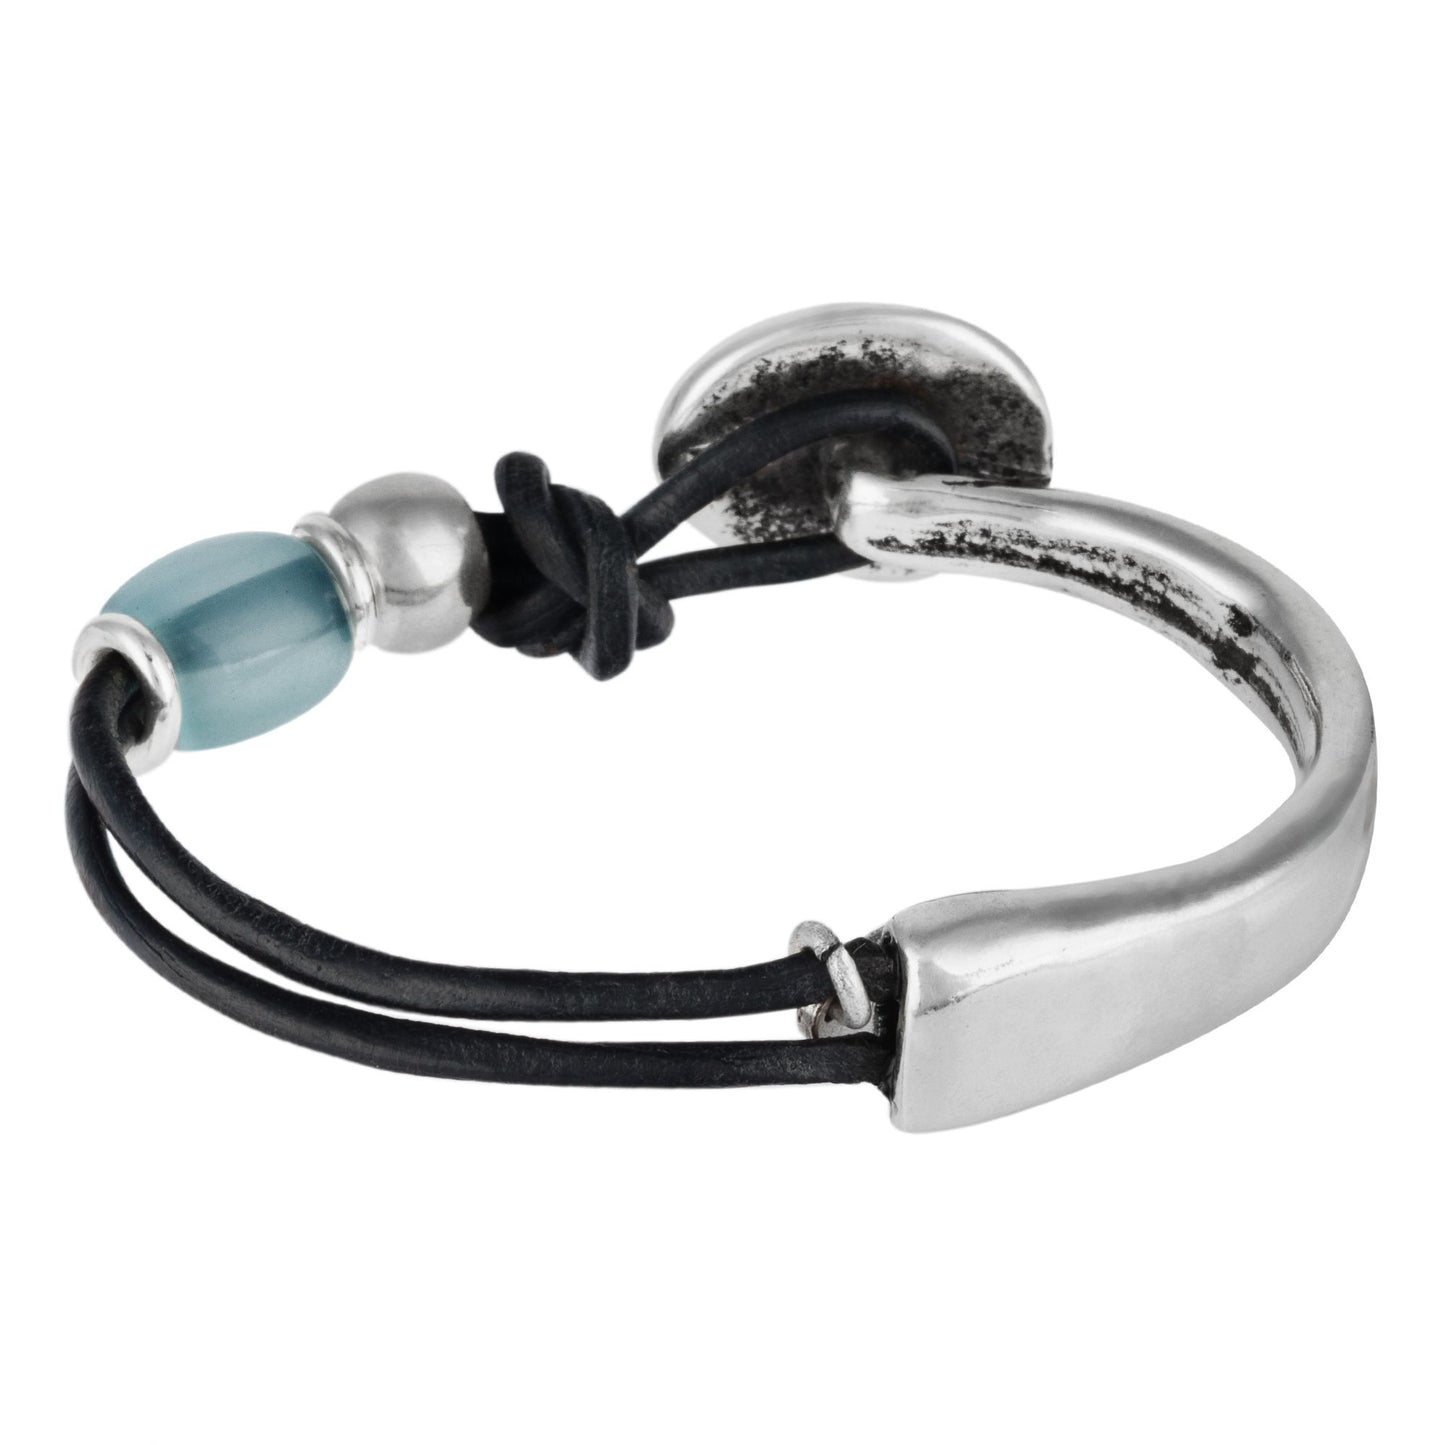 Zama aquamarine leather and silver plated bracelet